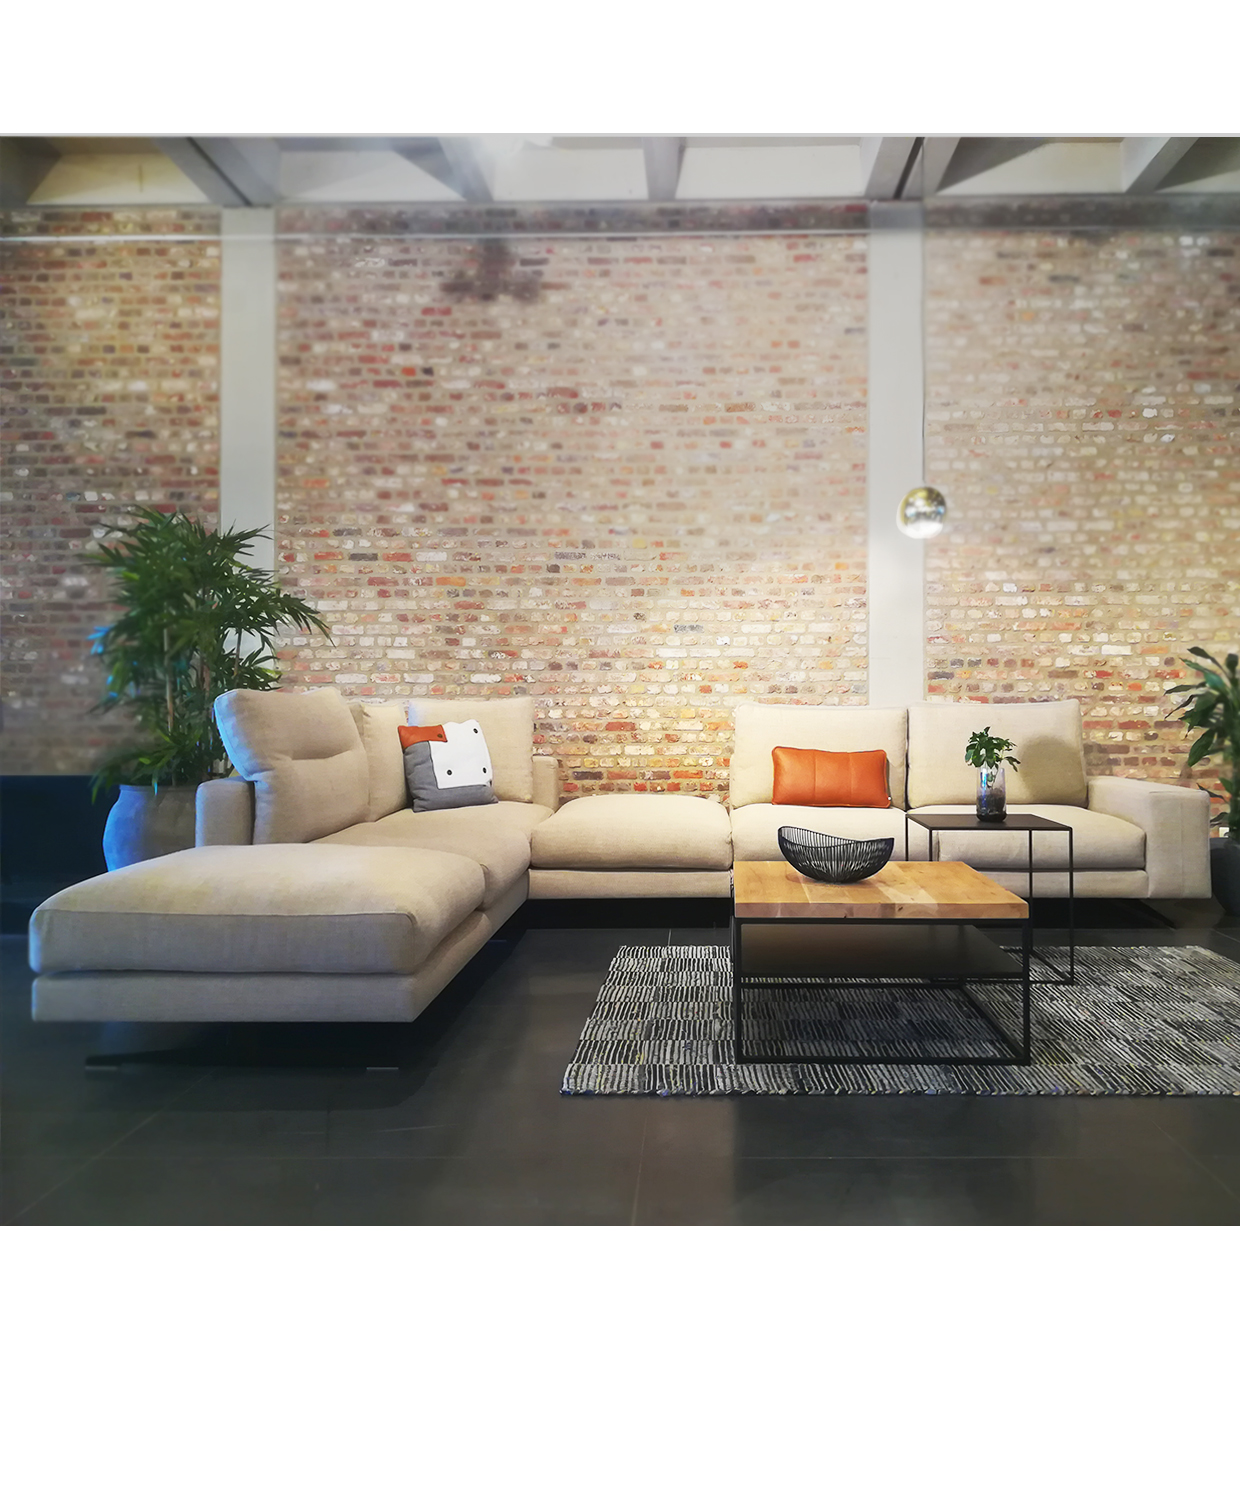 Meubelen: De Sofa | Design Hoekzetel in stof